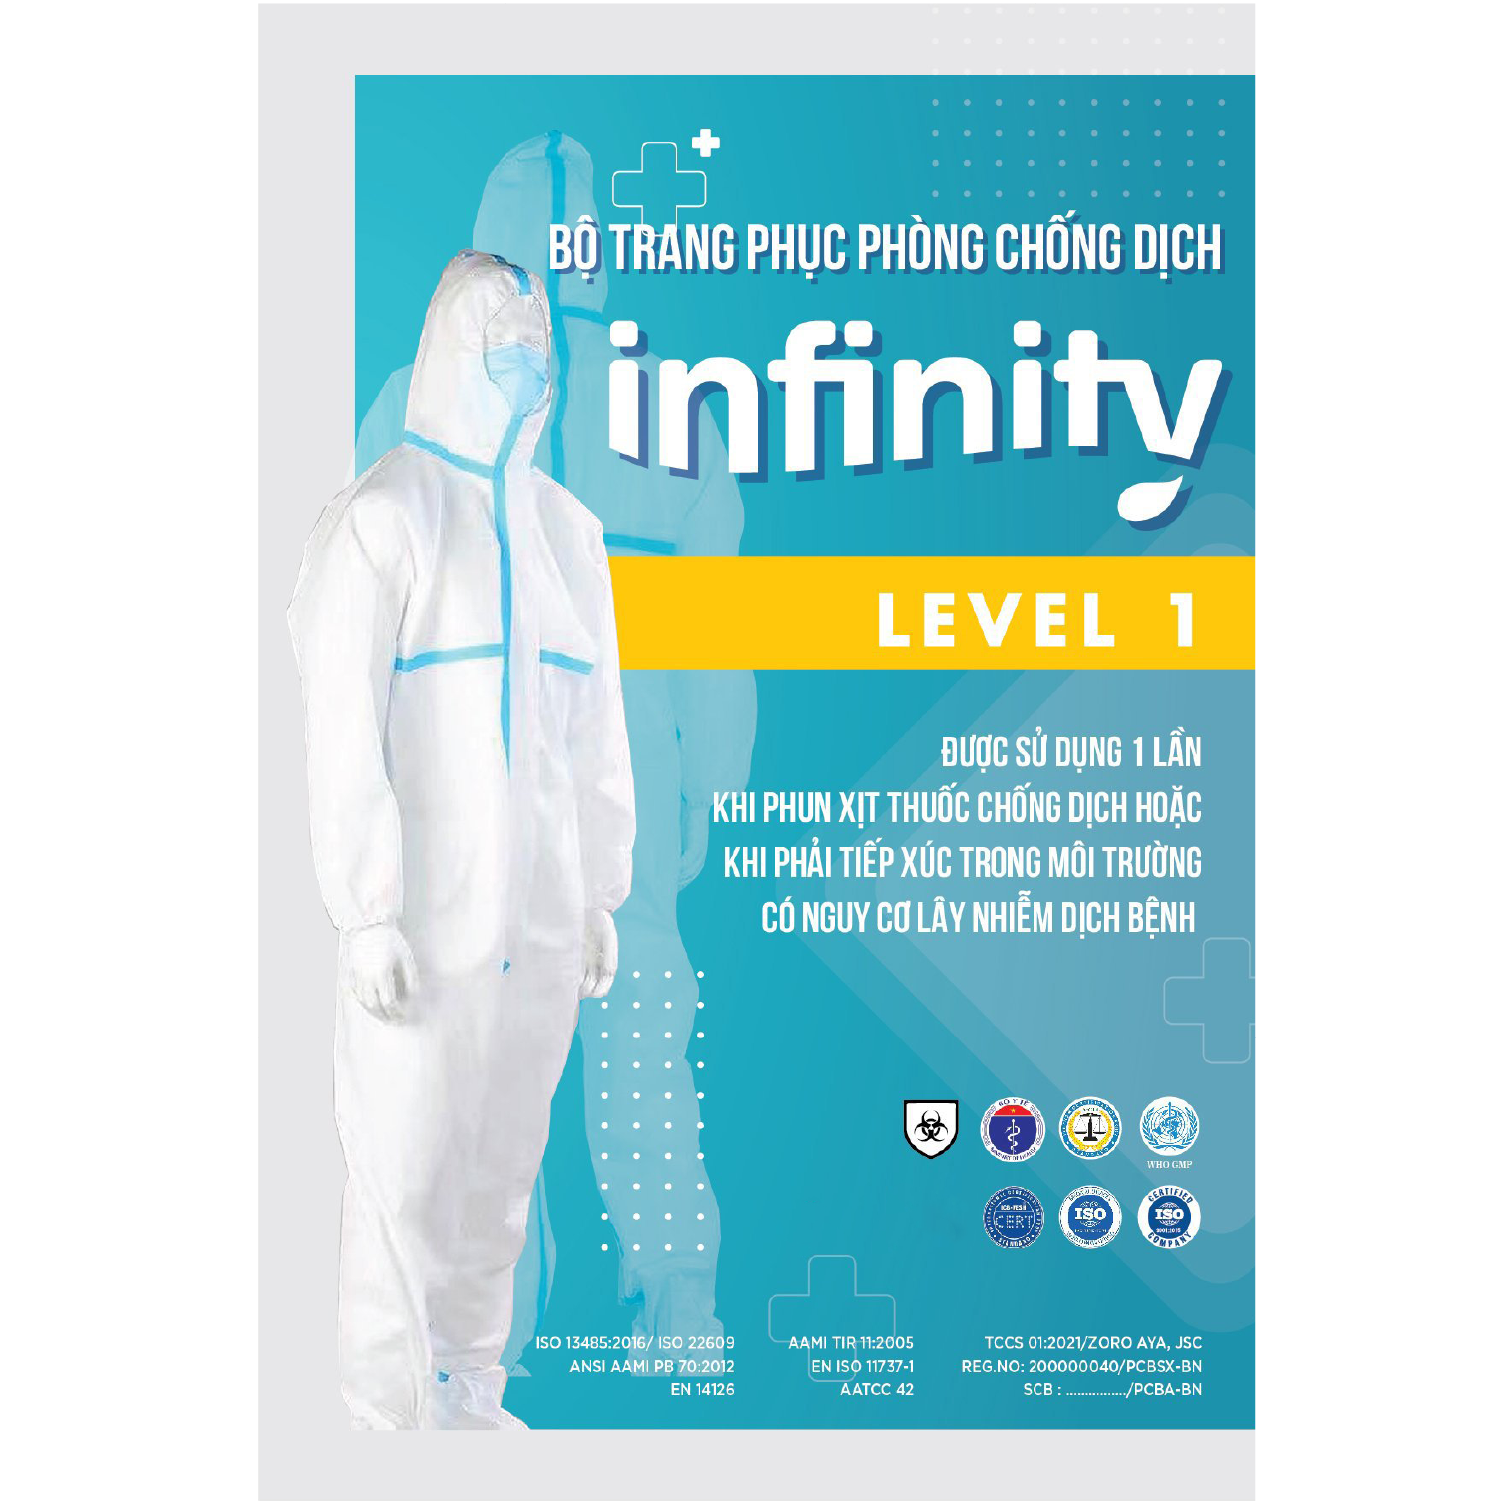 Bộ trang phục phòng chống dịch Infinity cấp độ 1